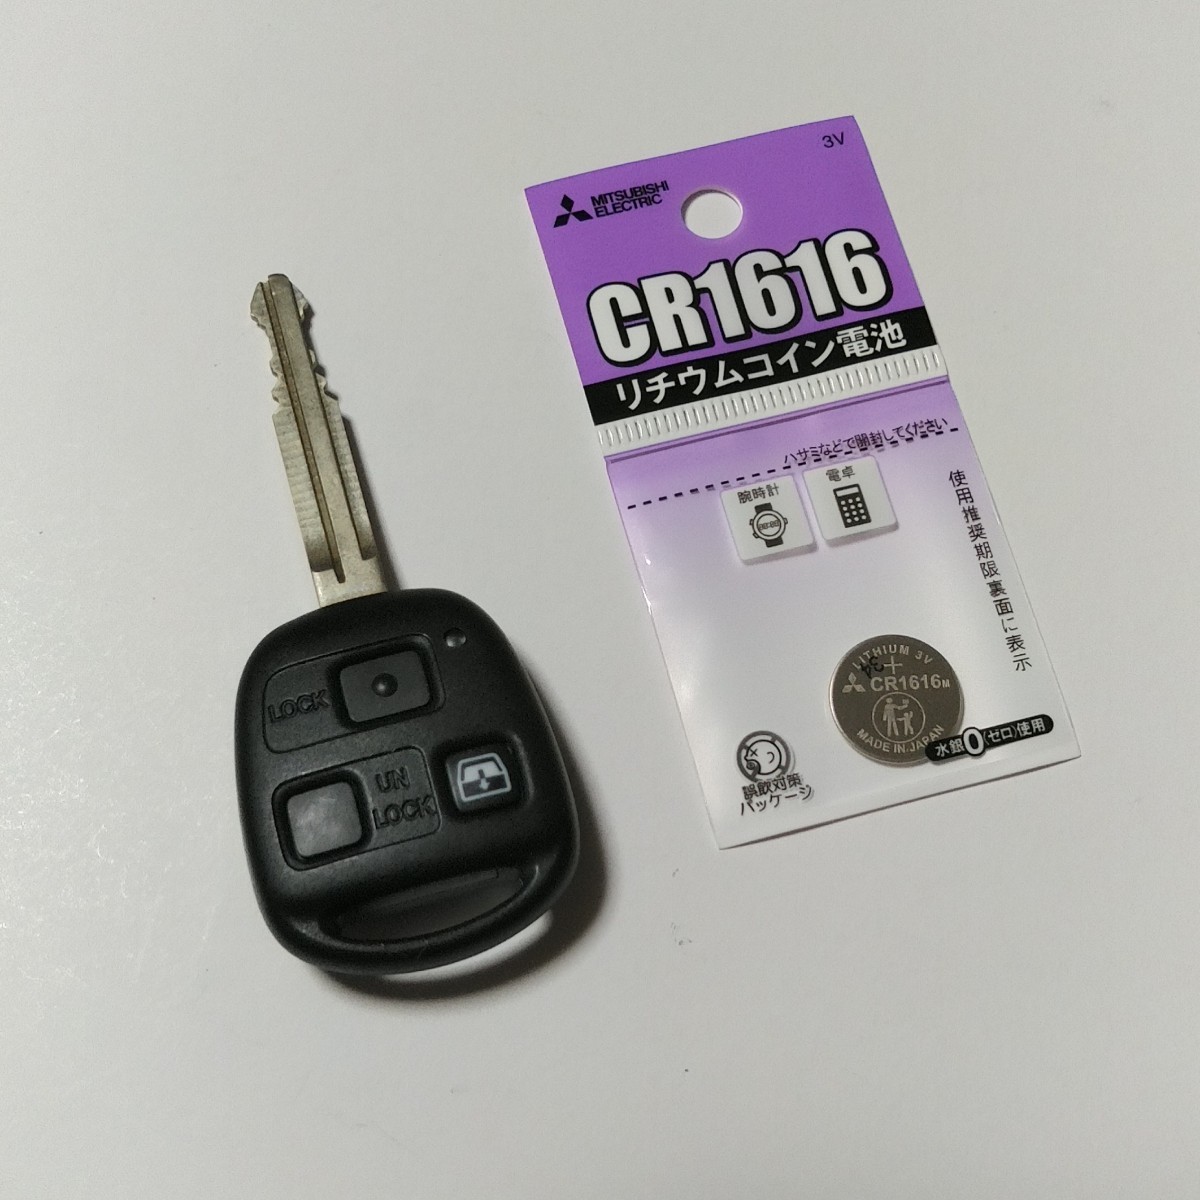 [ бесплатная доставка ] не использовался ( запасной хранение )! Toyota оригинальный дистанционный ключ [ Hilux Surf (210 серия /215 серия )][3 кнопка / основа 35010/L печать ] рабочее состояние подтверждено .!